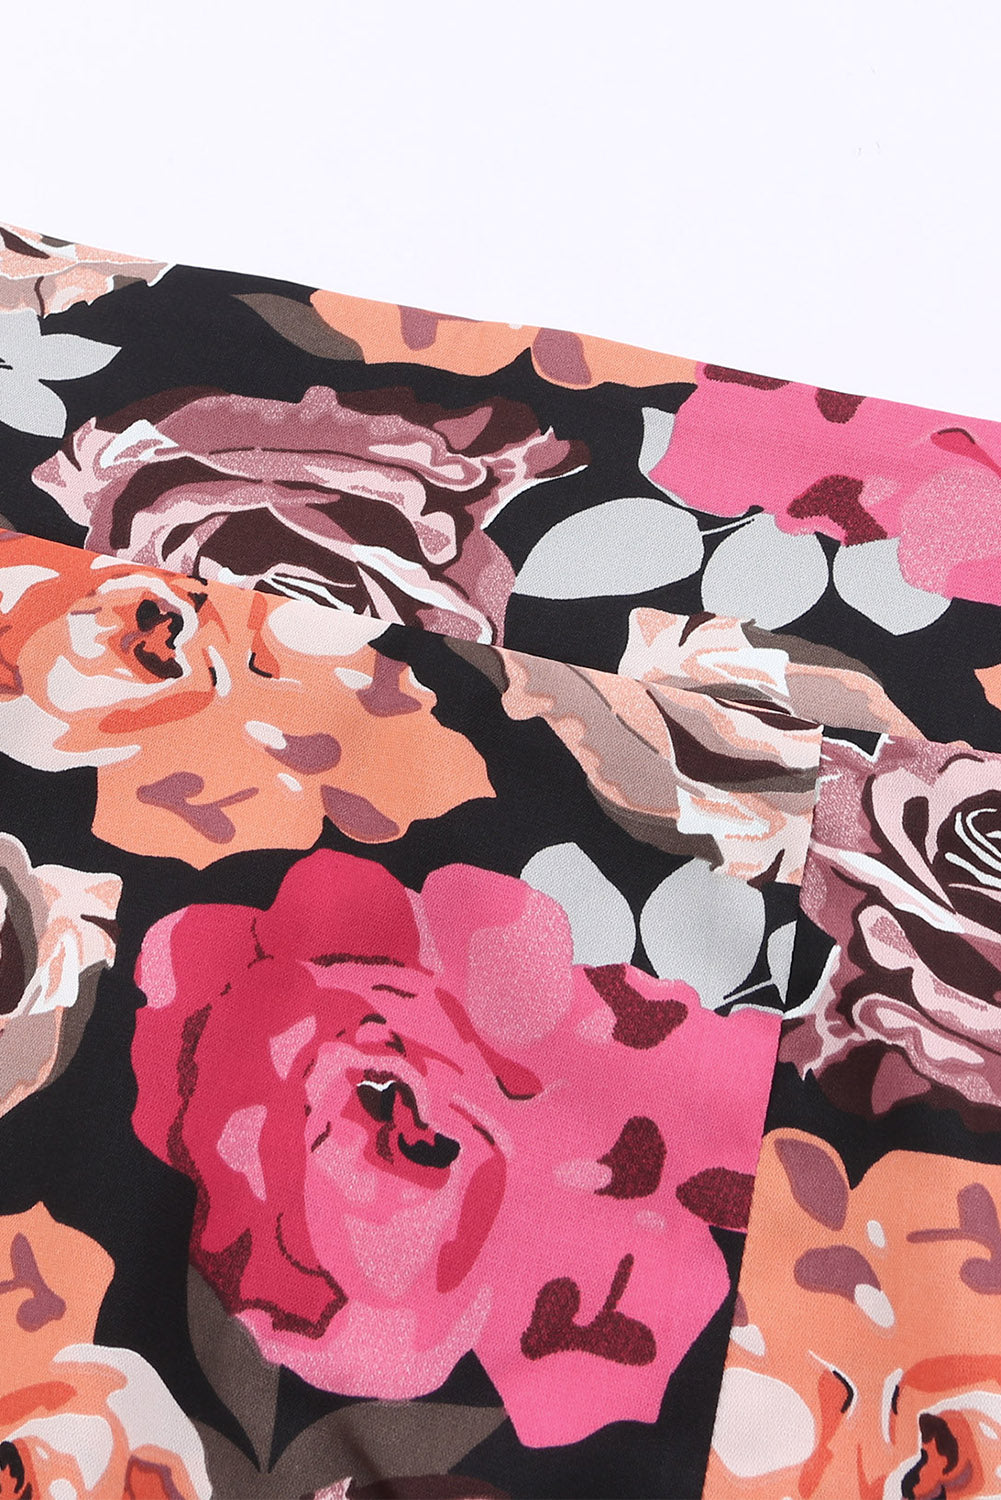 Multicolor Floral Print Asymmetric Front Knot Wrap Skirt